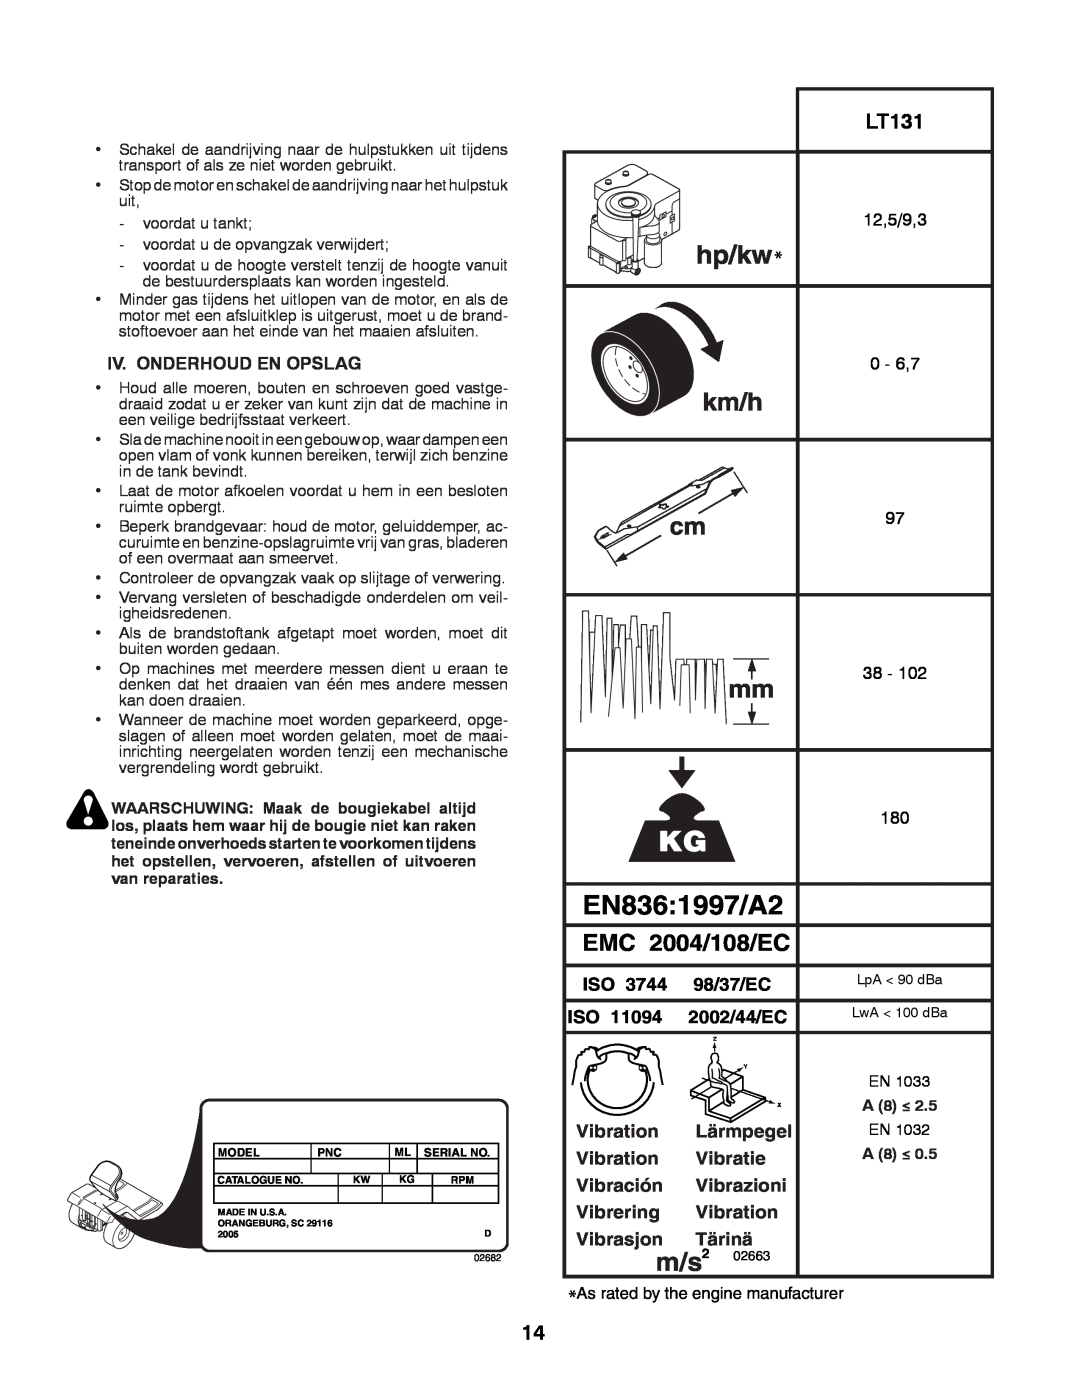 Husqvarna LT131 EN8361997/A2, m/s2, EMC 2004/108/EC, 98/37/EC, 2002/44/EC, Vibration, Lärmpegel, Vibratie, Vibración 